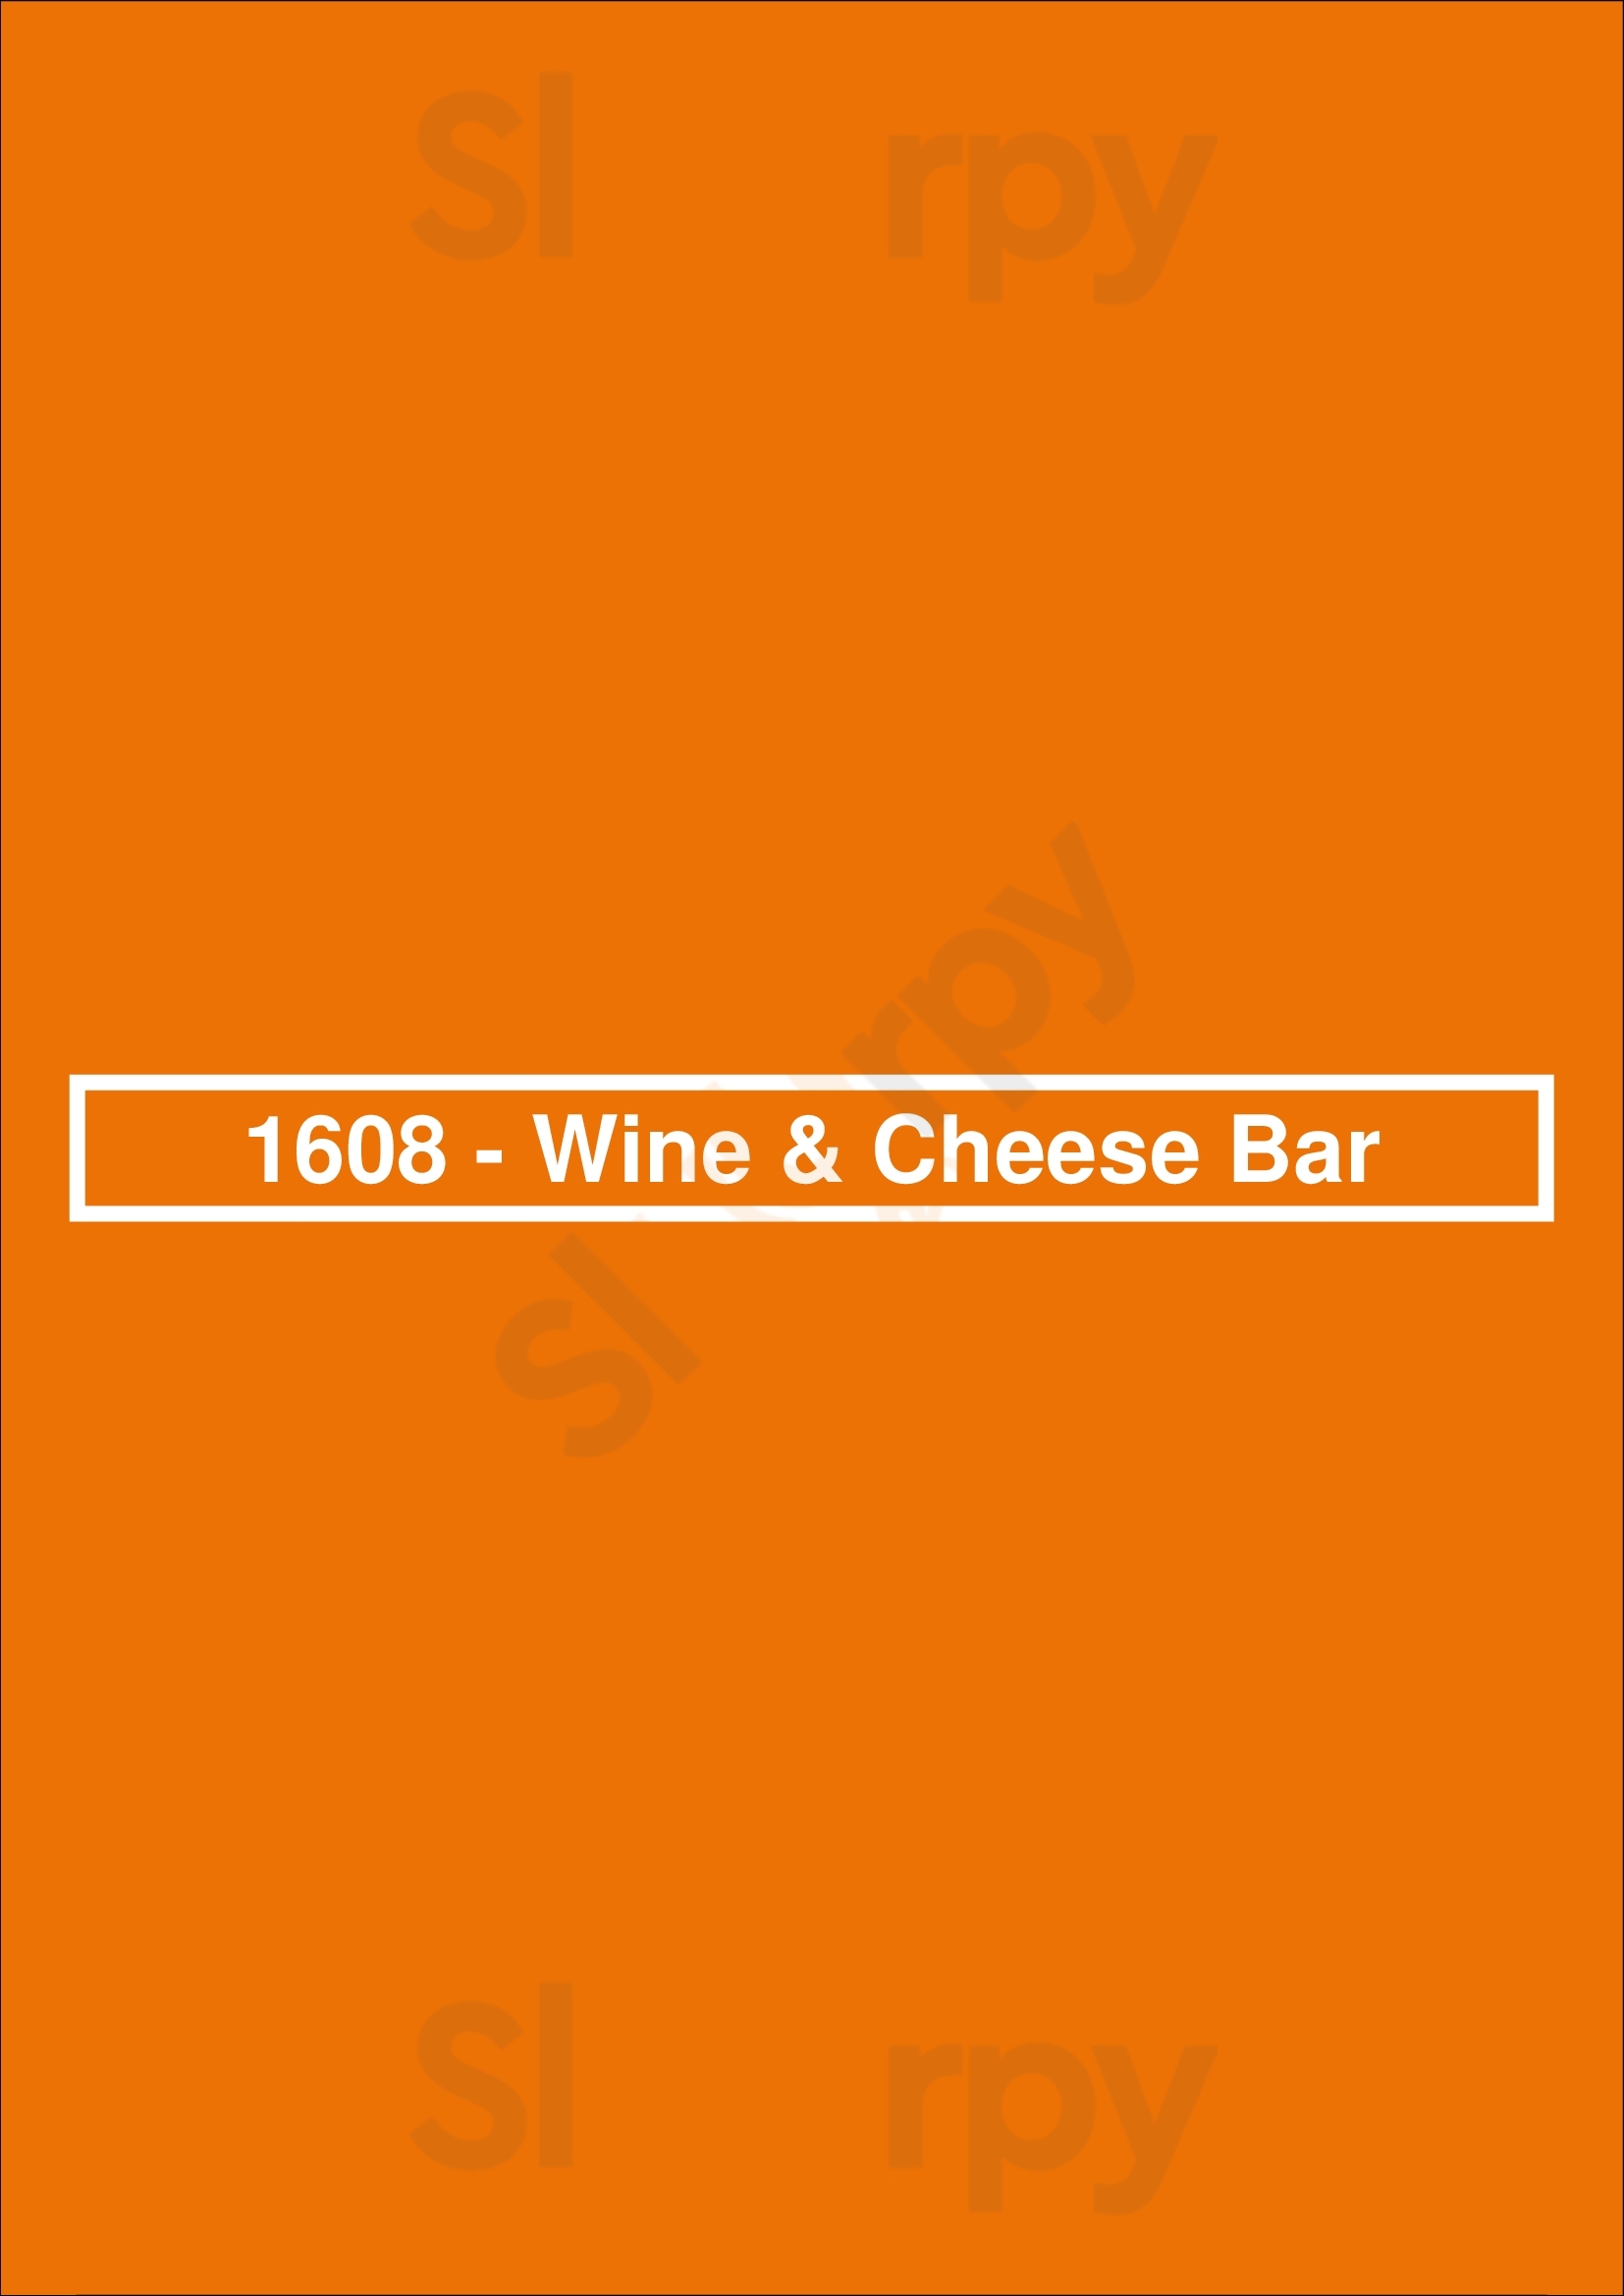 1608 Bar Quebec City Menu - 1